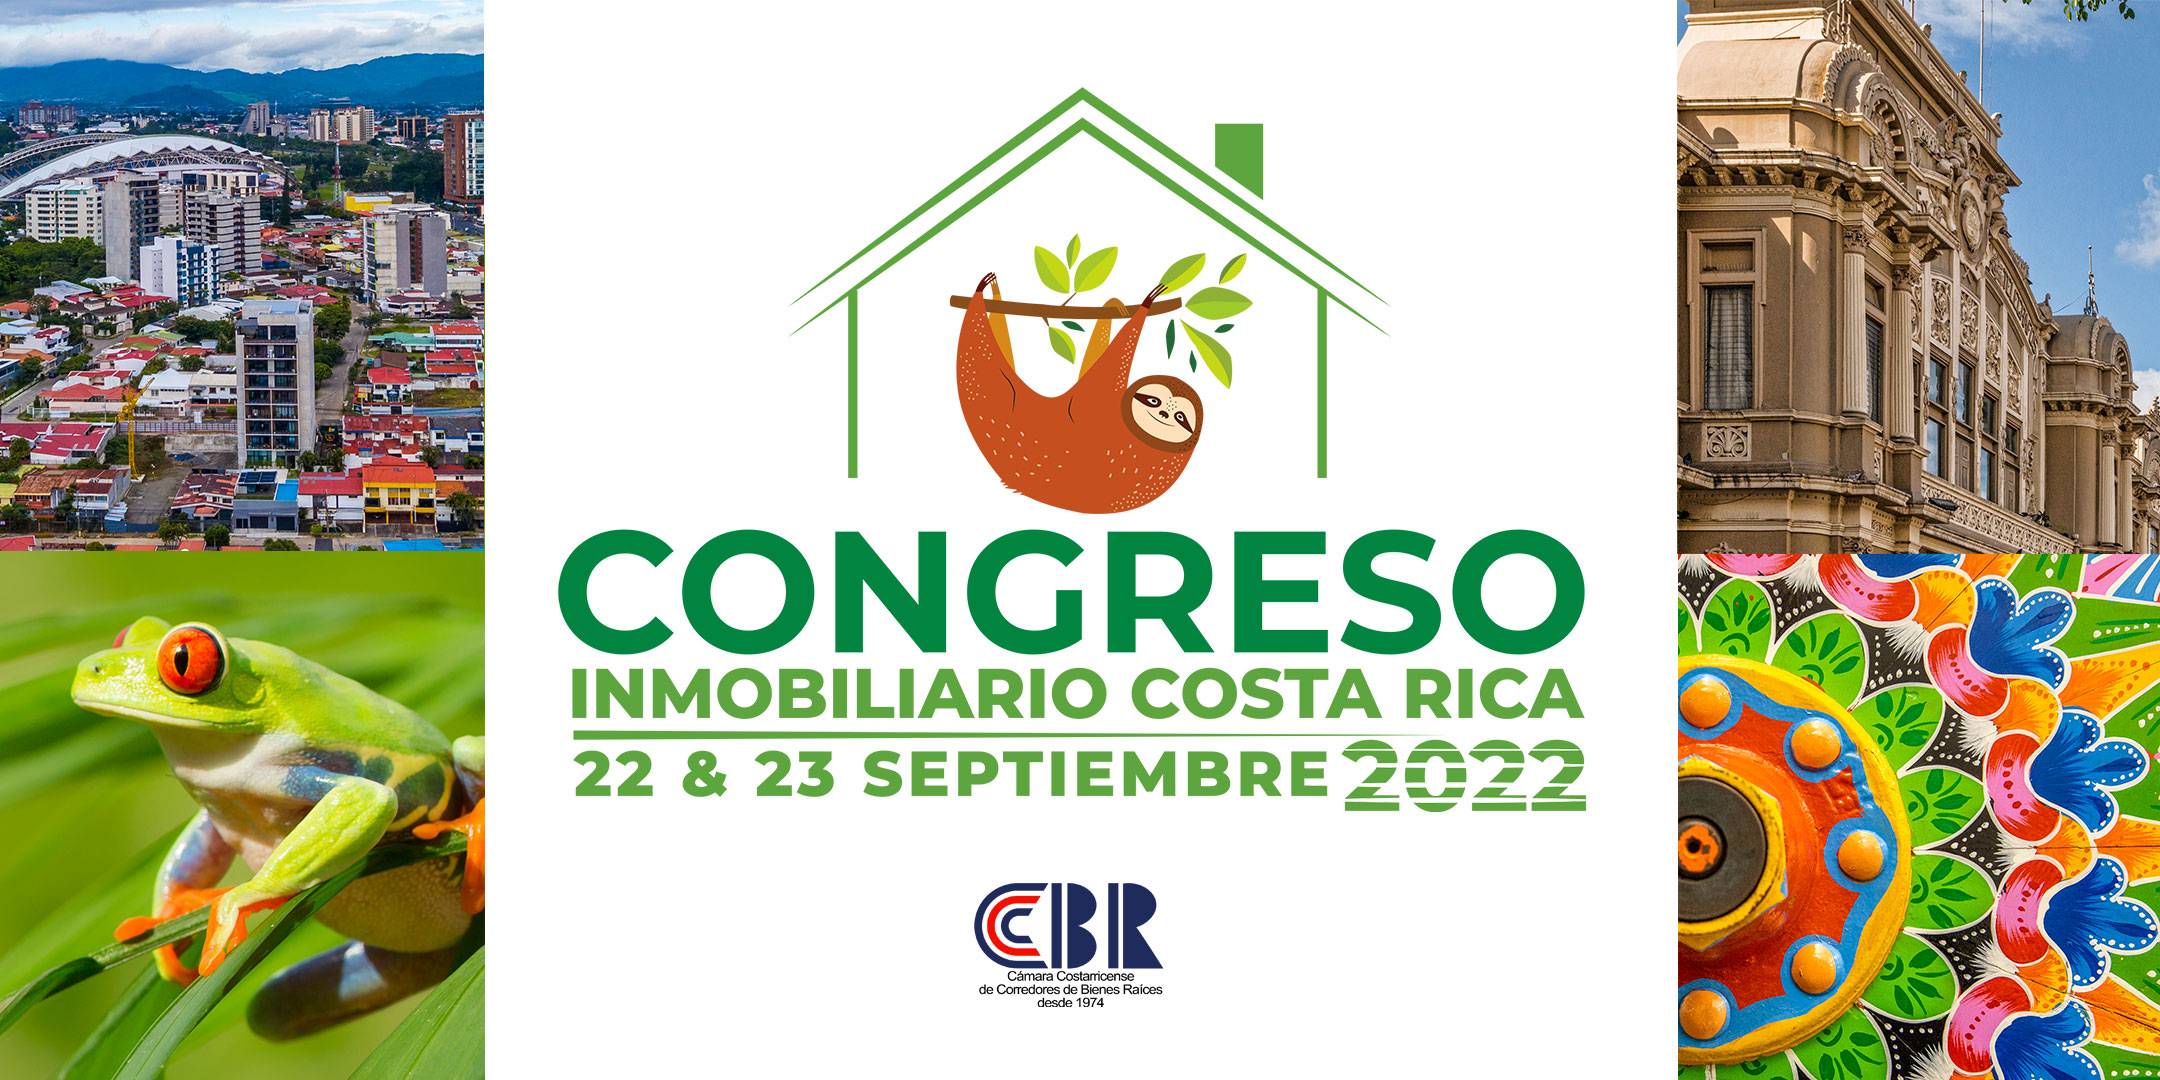 CONGRESO INMOBILIARIO COSTA RICA 2022